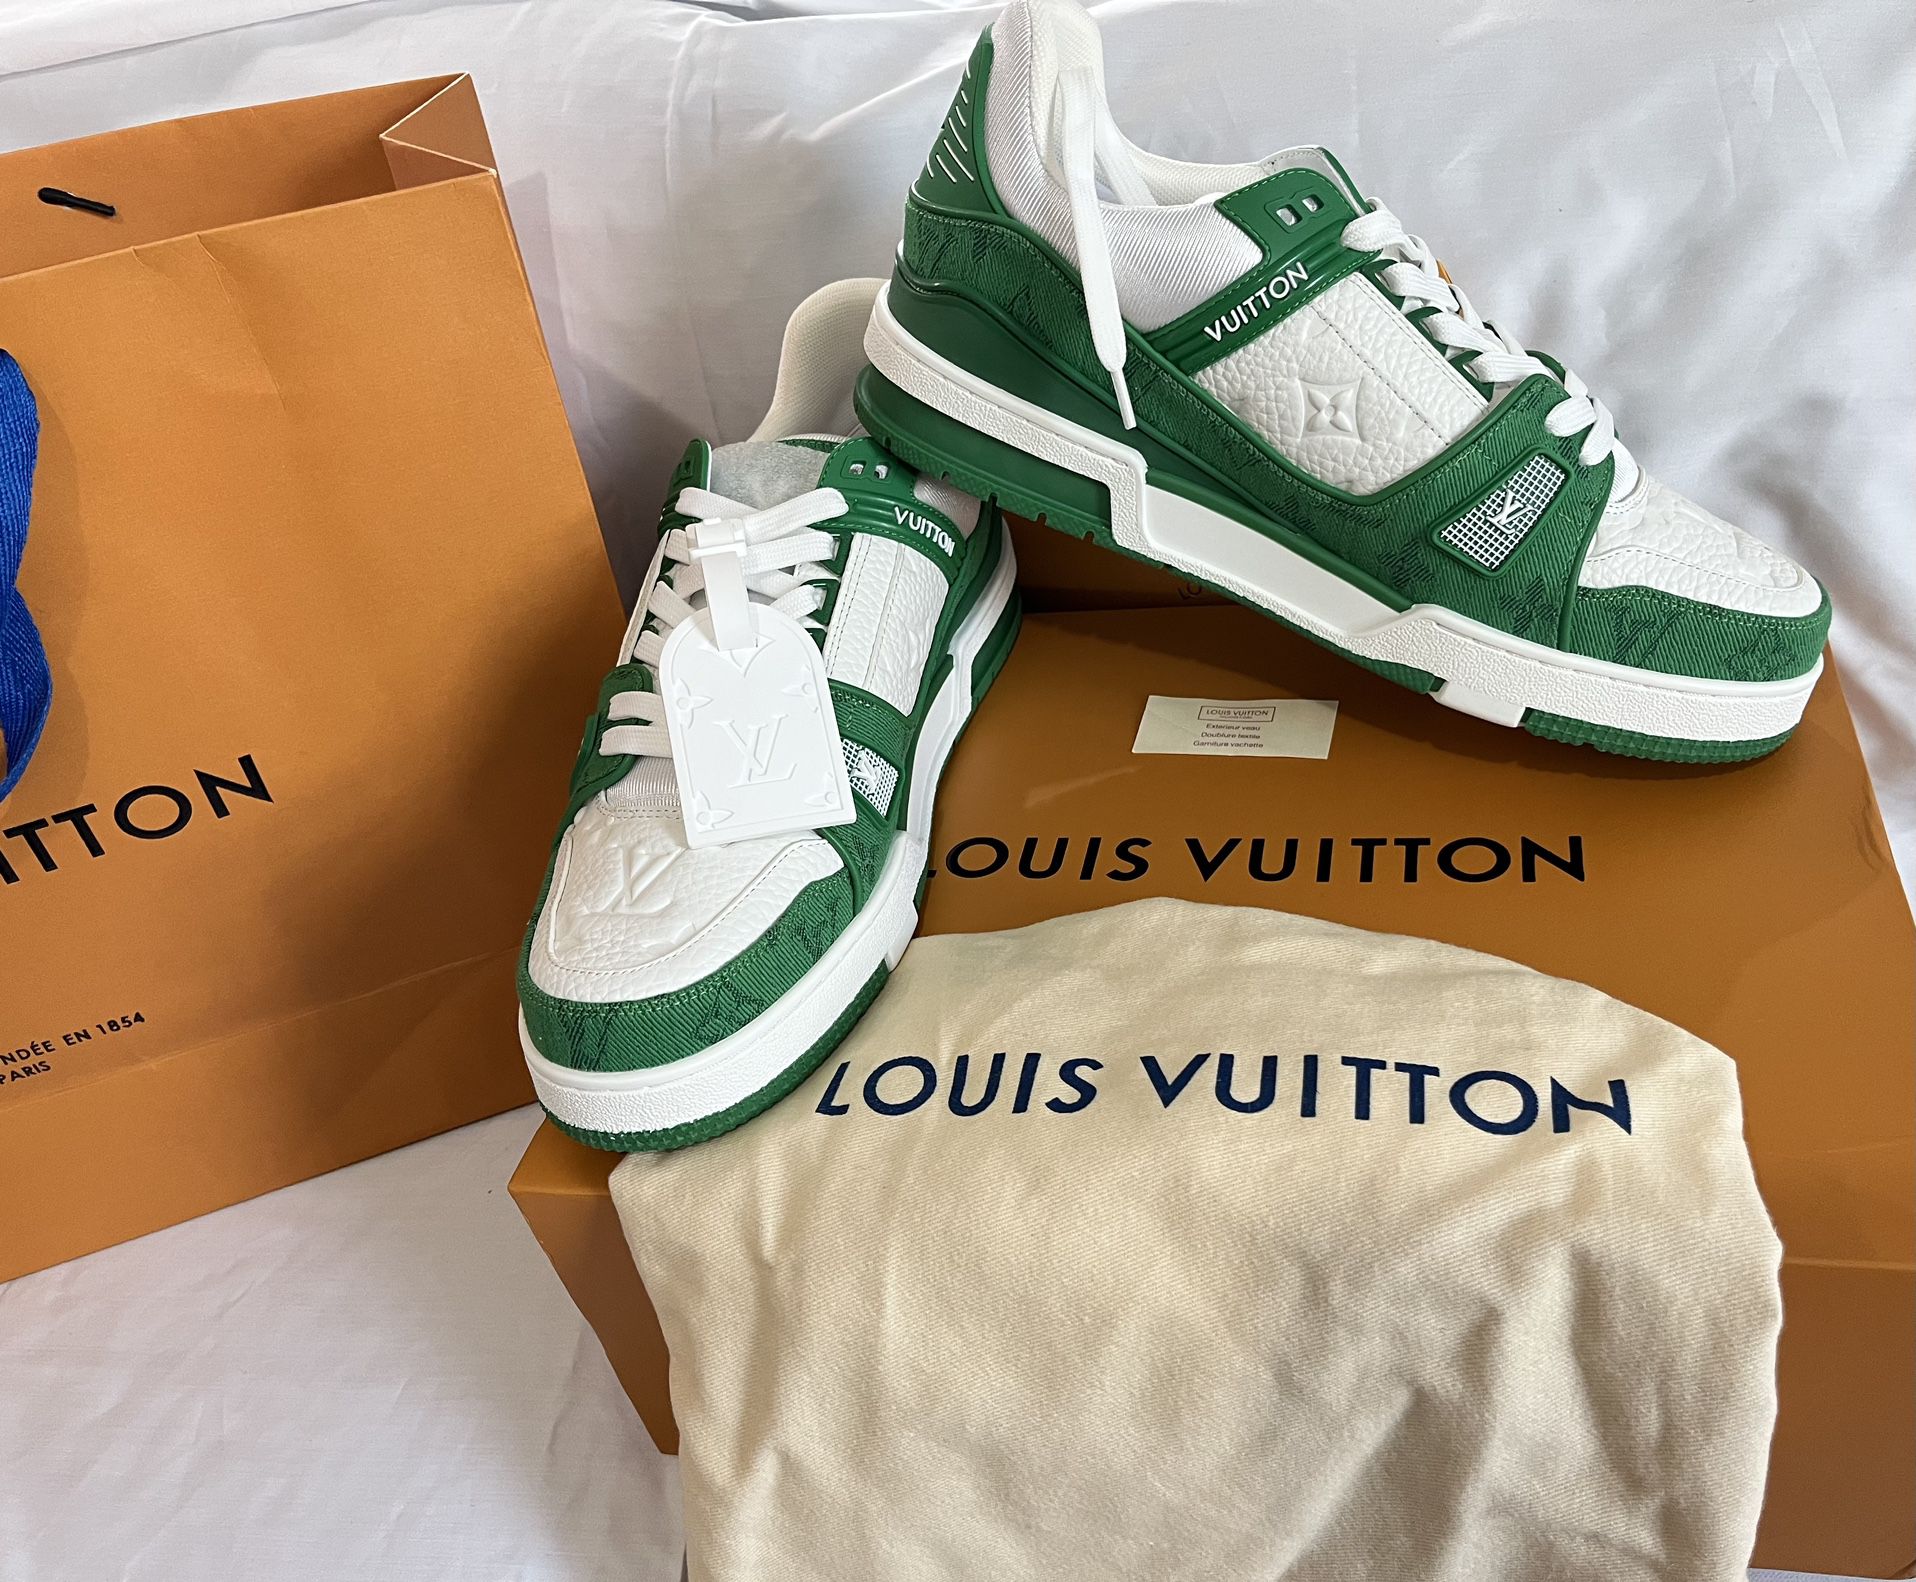 New Louis Vuitton Trainer monogram denim green & white